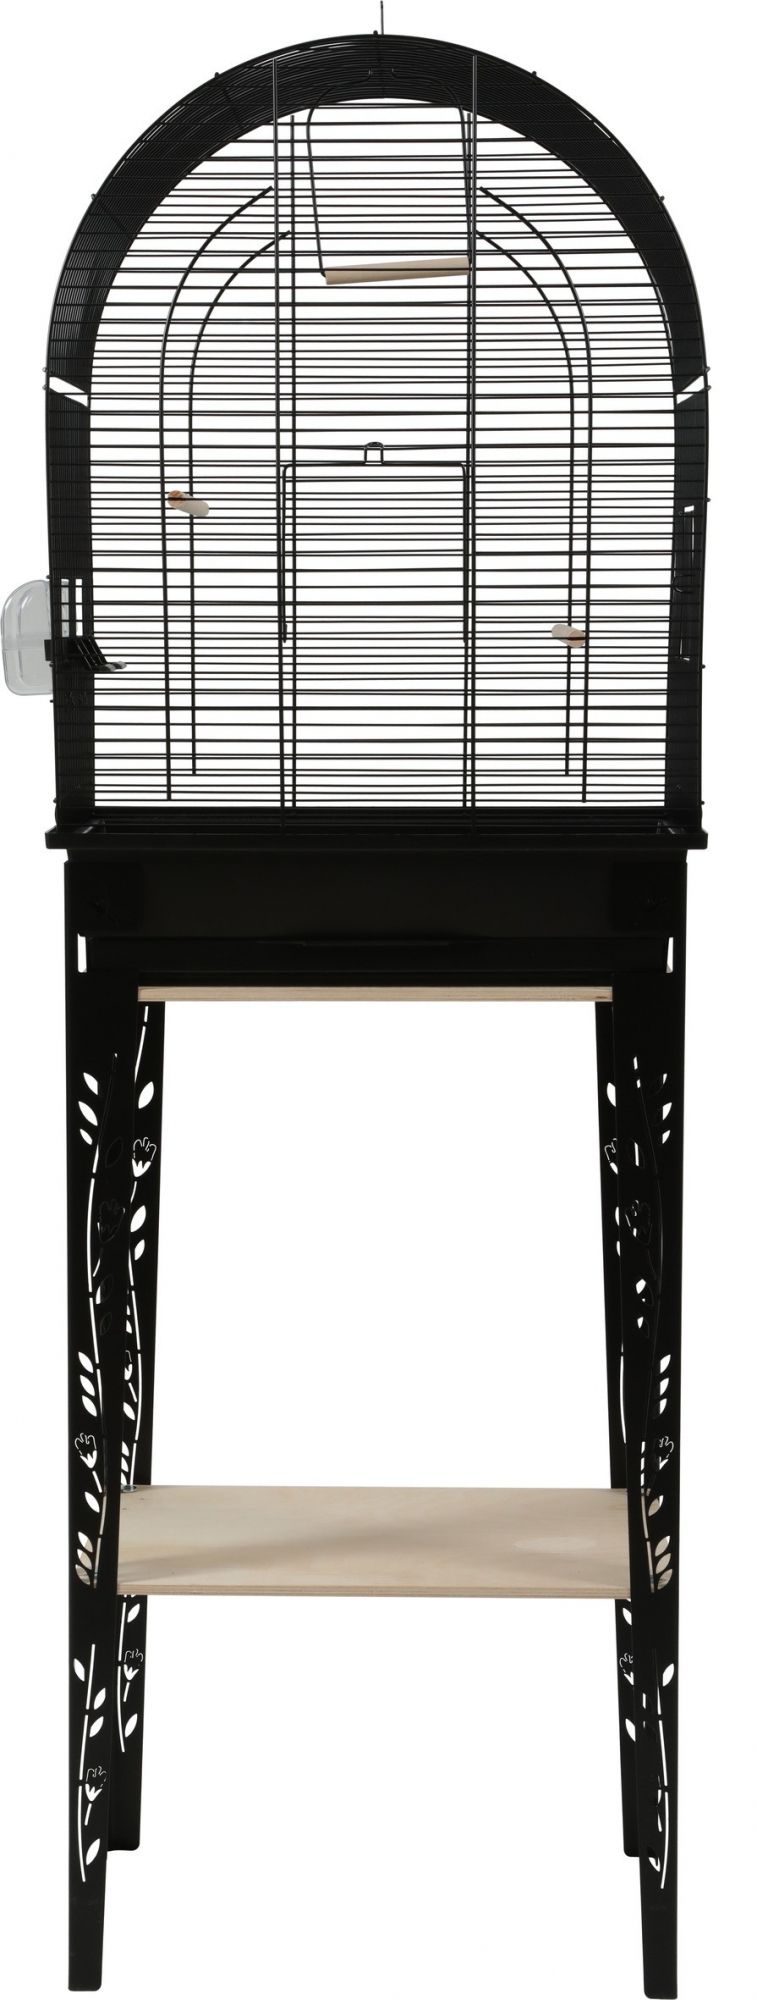 Chic Patio Vogelkäfig mit Ständer in schwarz - 3 Größen erhältlich